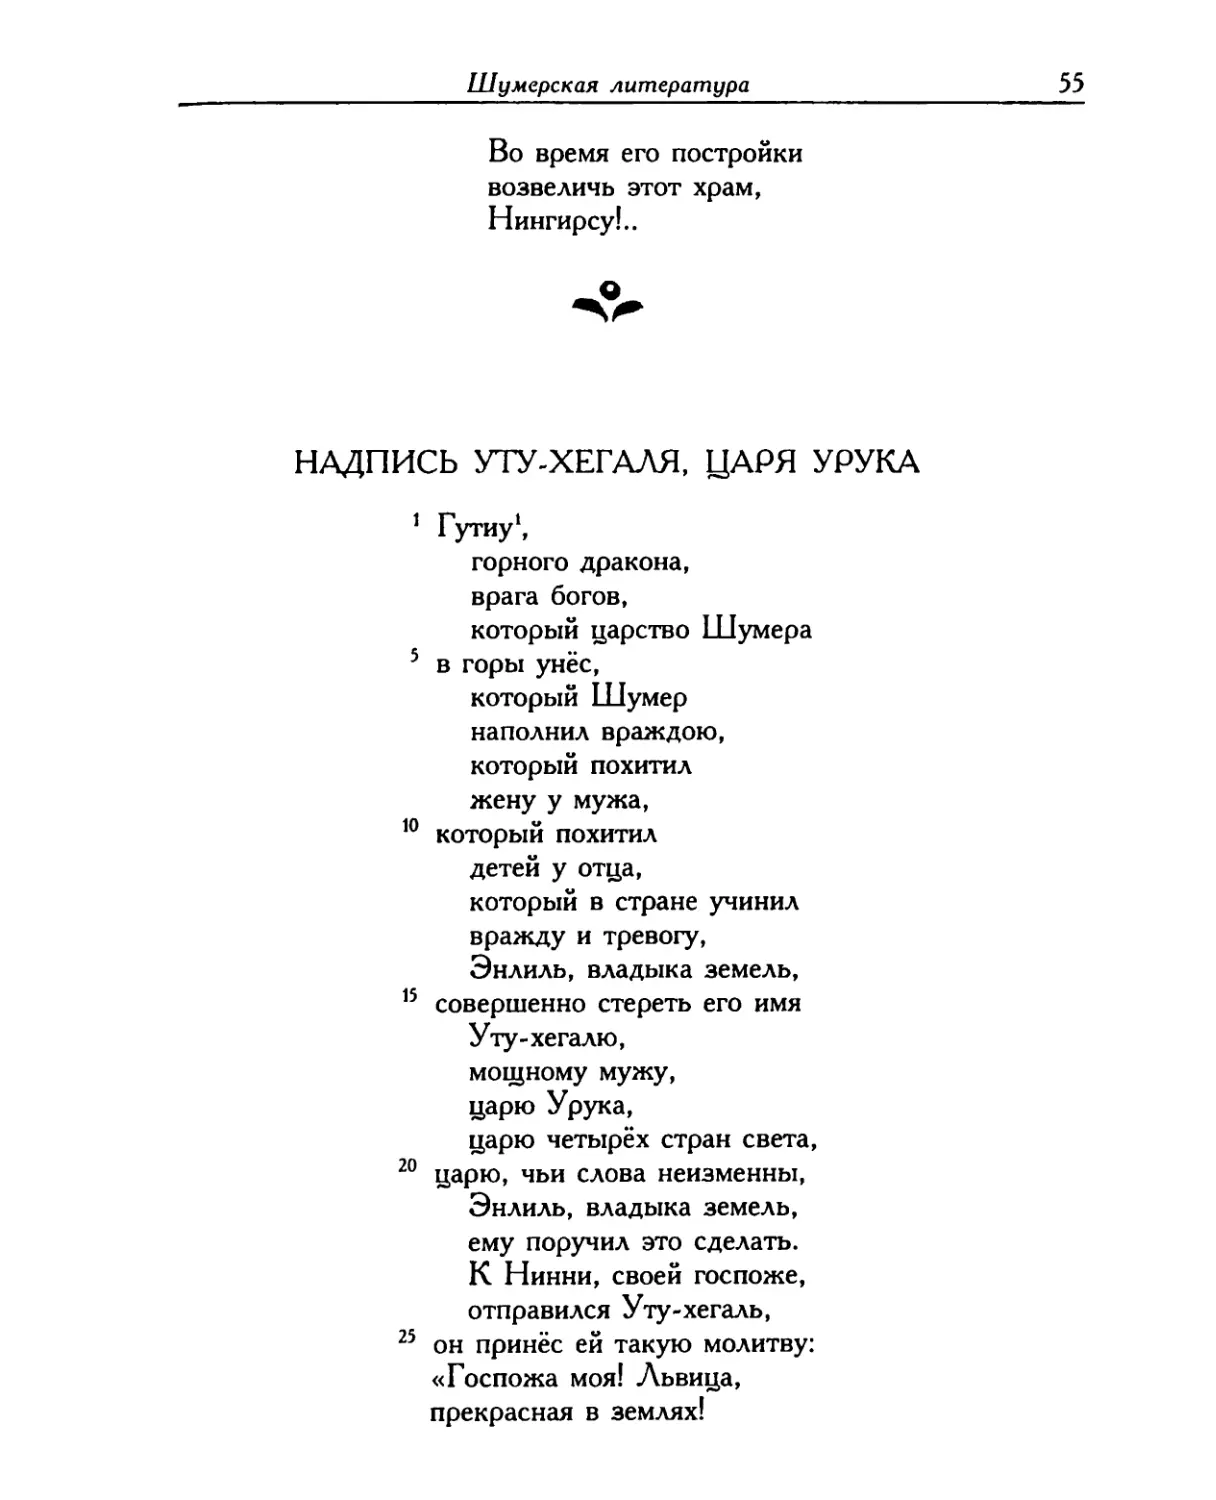 Надпись Уту-хегаля, царя Урука